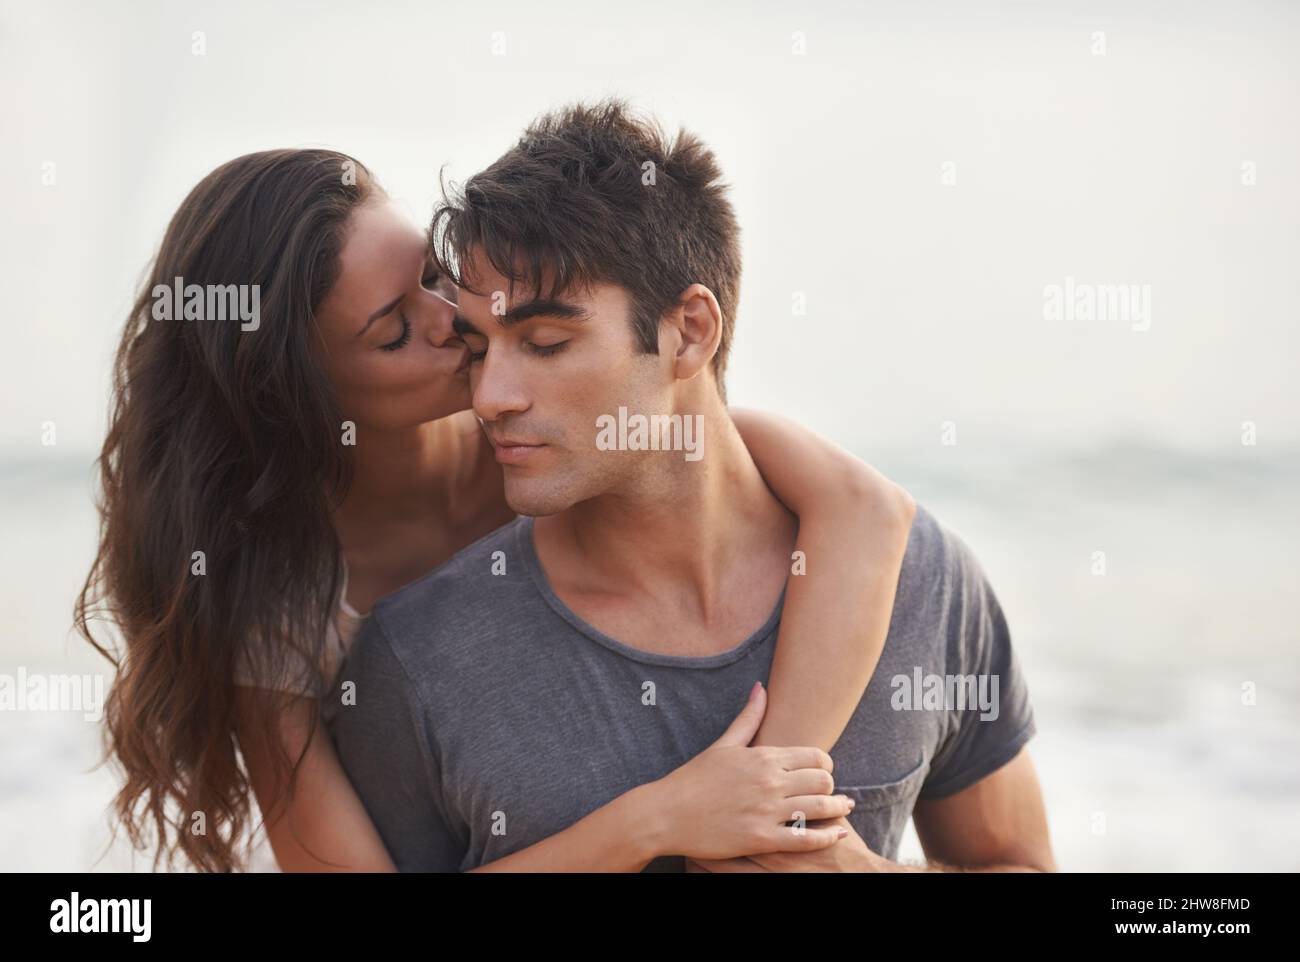 La chance dans l'amour. Photo courte d'un jeune couple affectueux à la plage. Banque D'Images